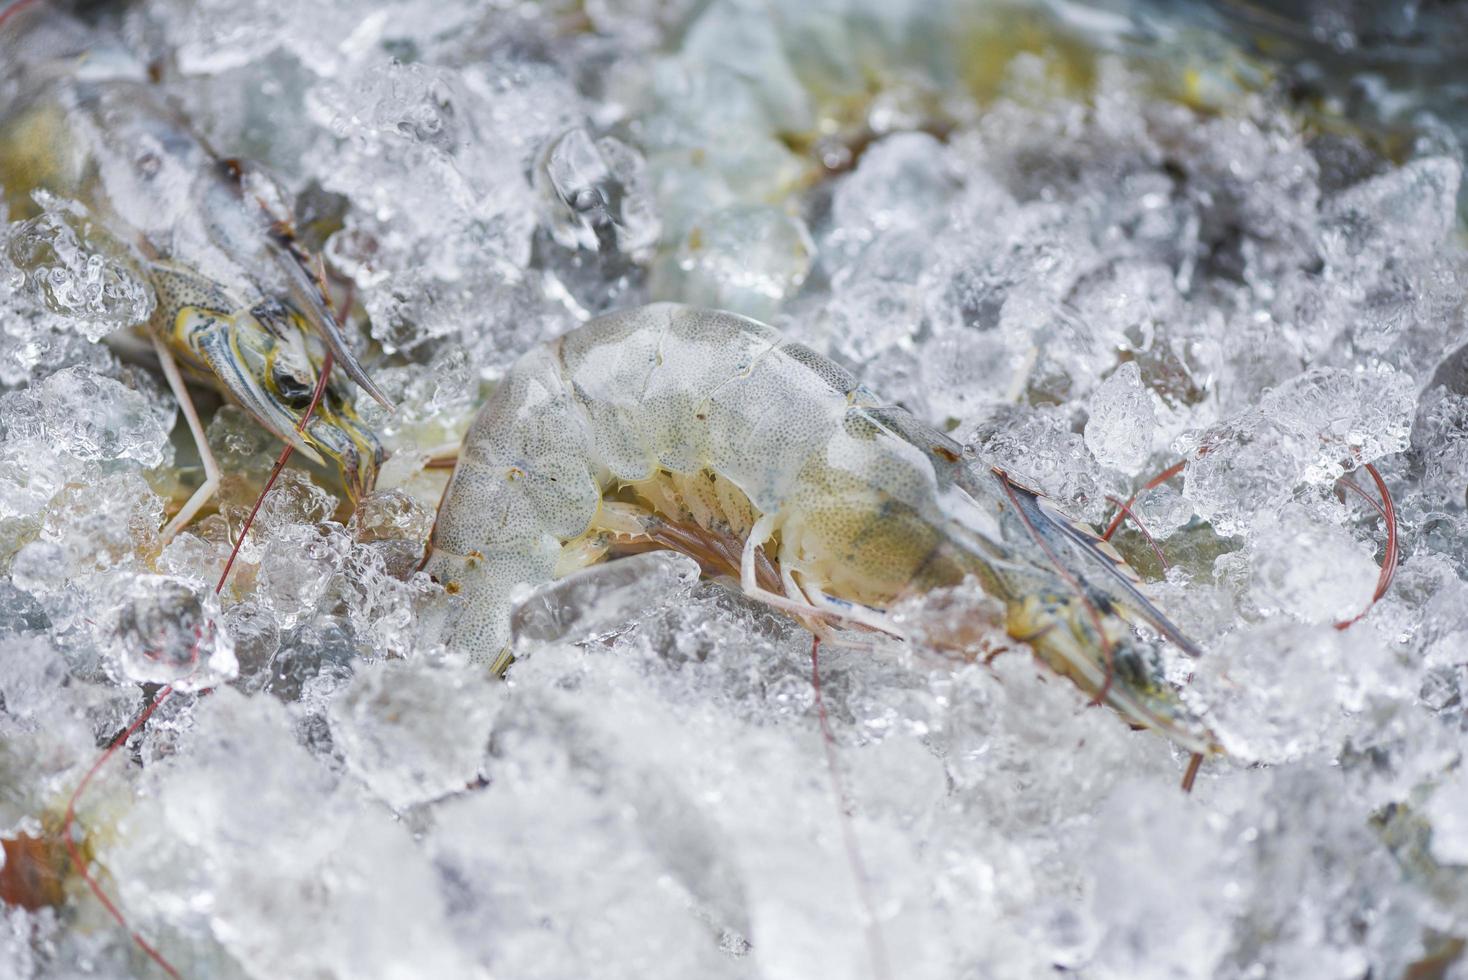 camarones crudos langostinos congelados en hielo en el restaurante de mariscos o en el mercado camarones frescos mariscos foto